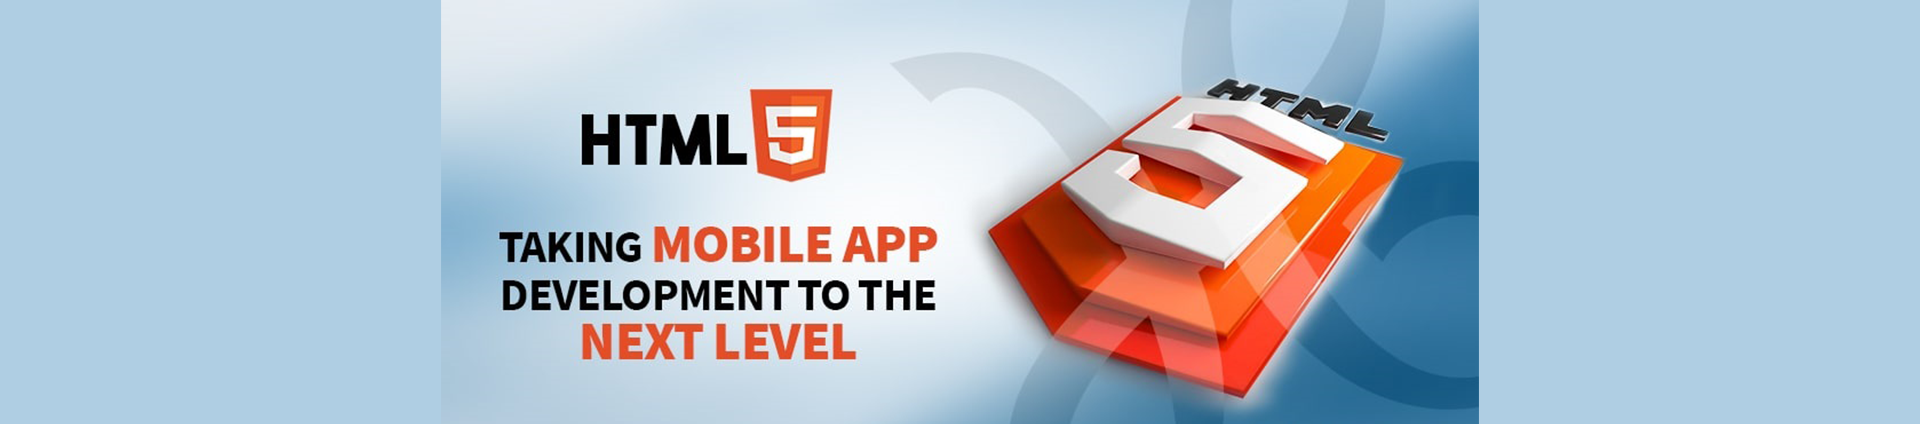 HTML5 for Mobile App Development